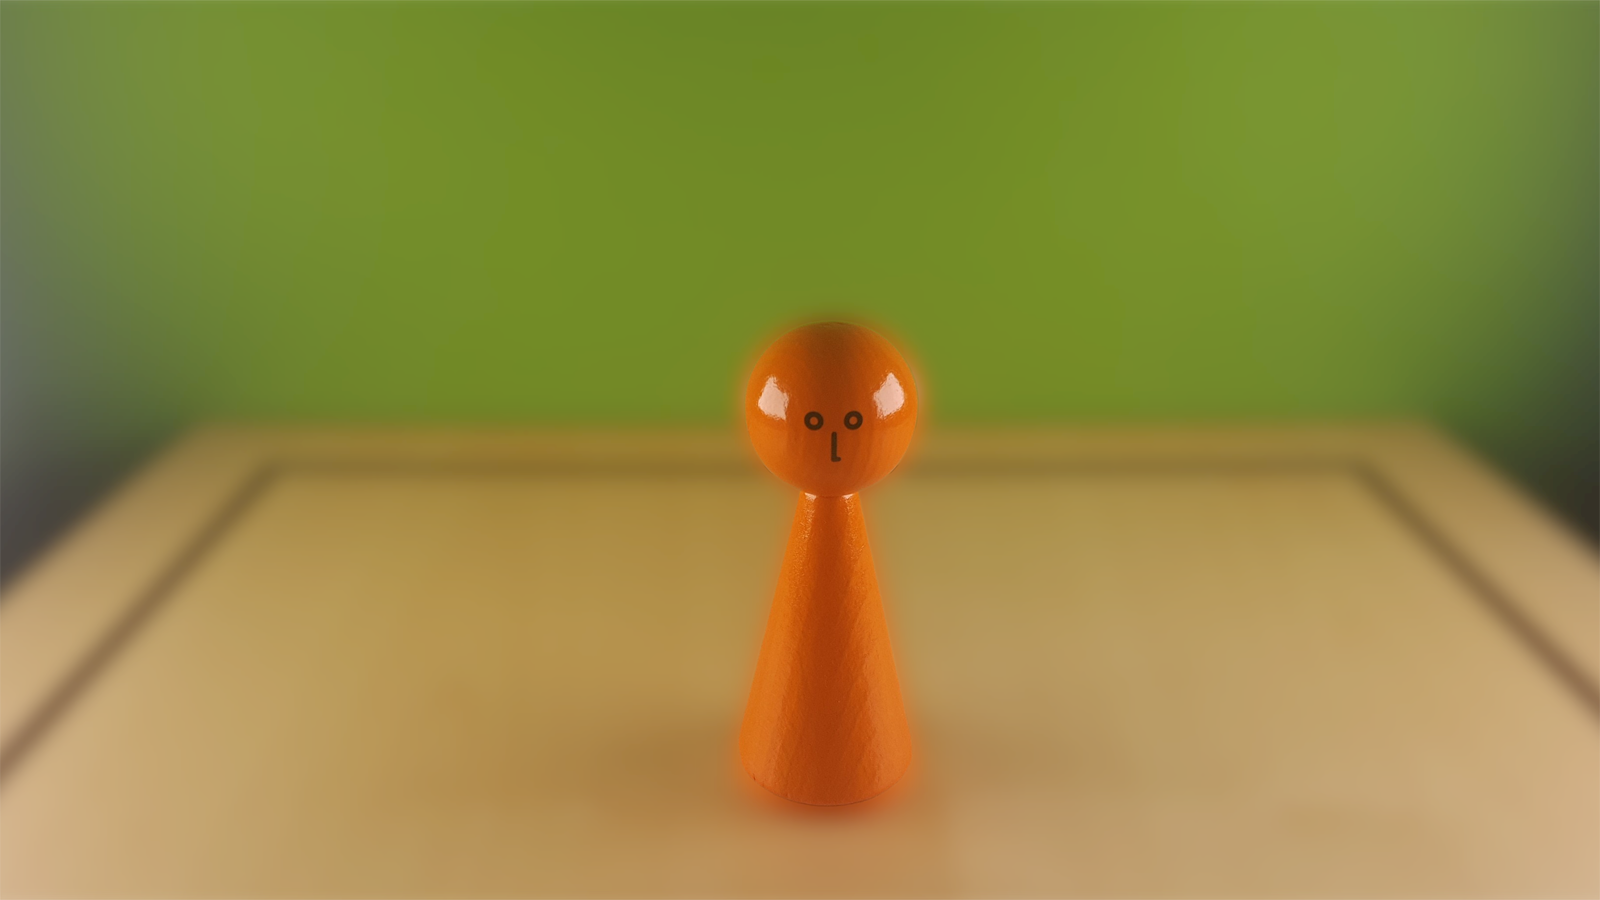 www.systembrett.at · Systembrett-Artikel · Einzel-Figur 10 cm in orange (mit Augen);